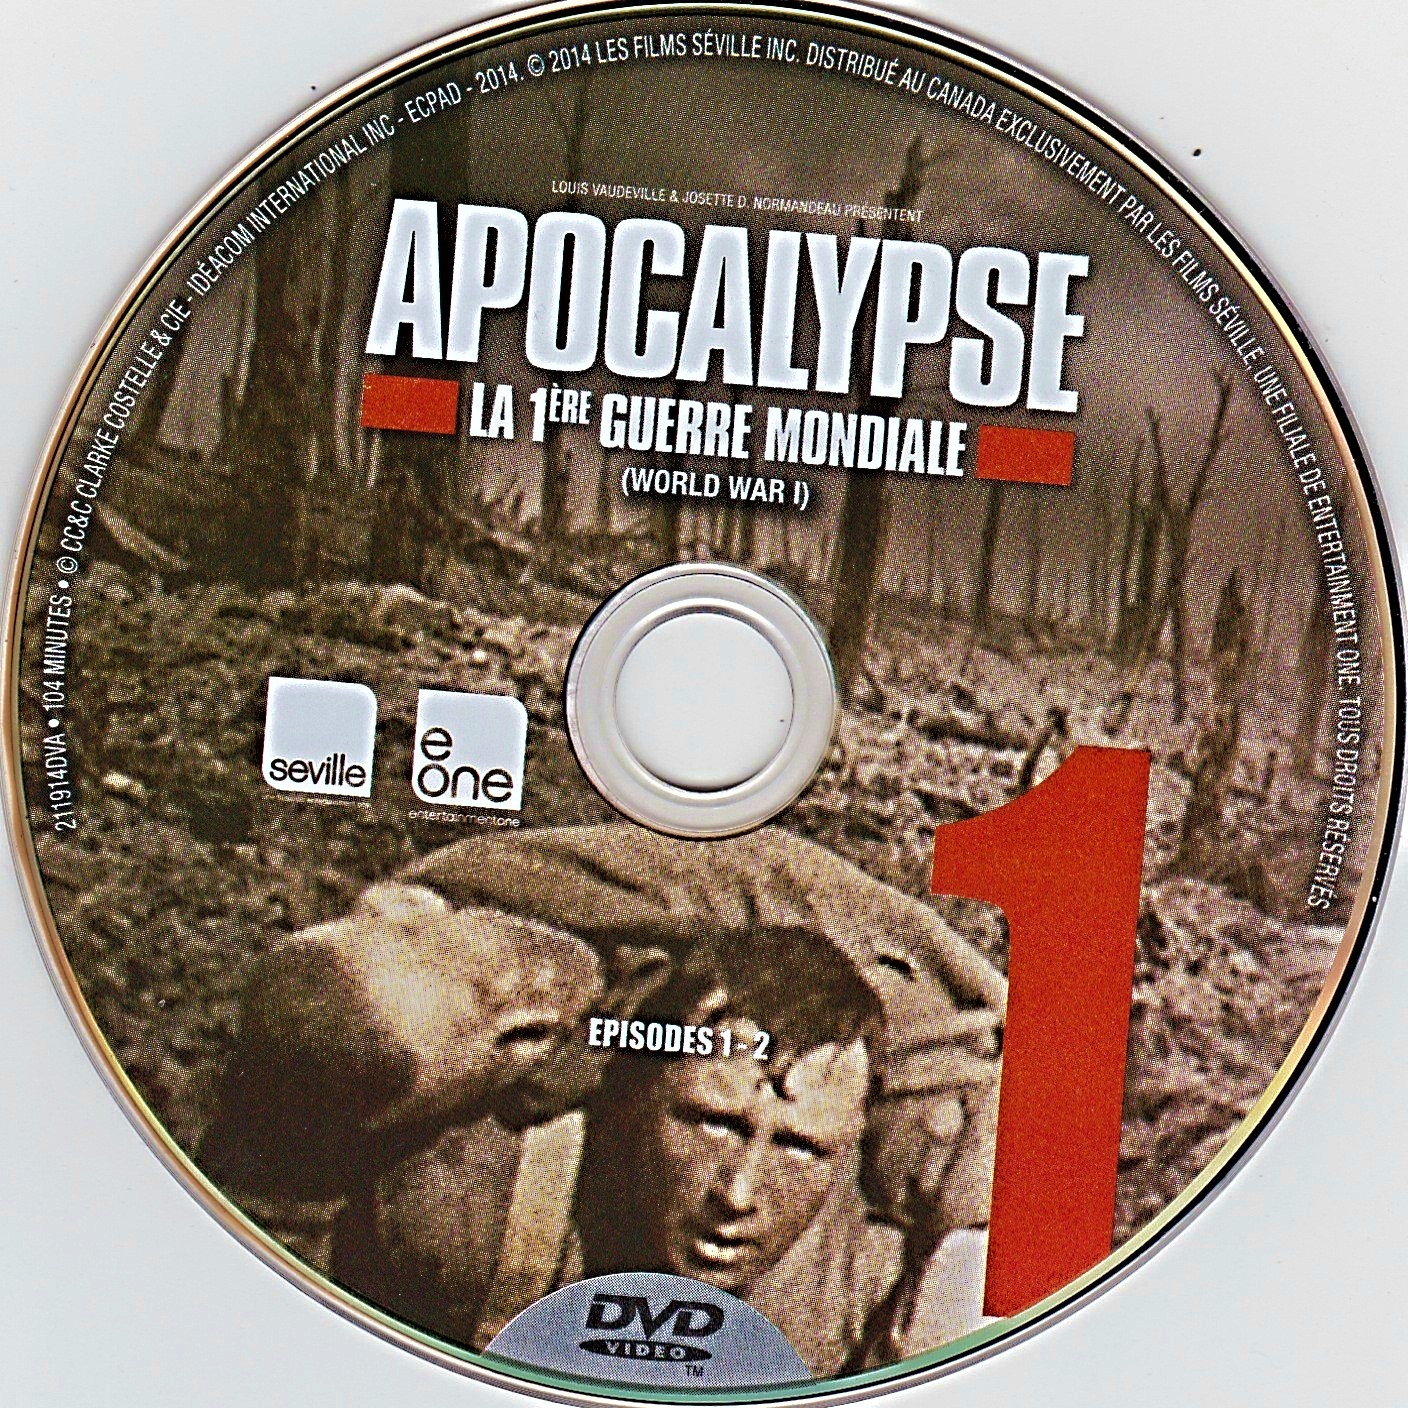 Apocalypse - 1re guerre mondiale DISC 1